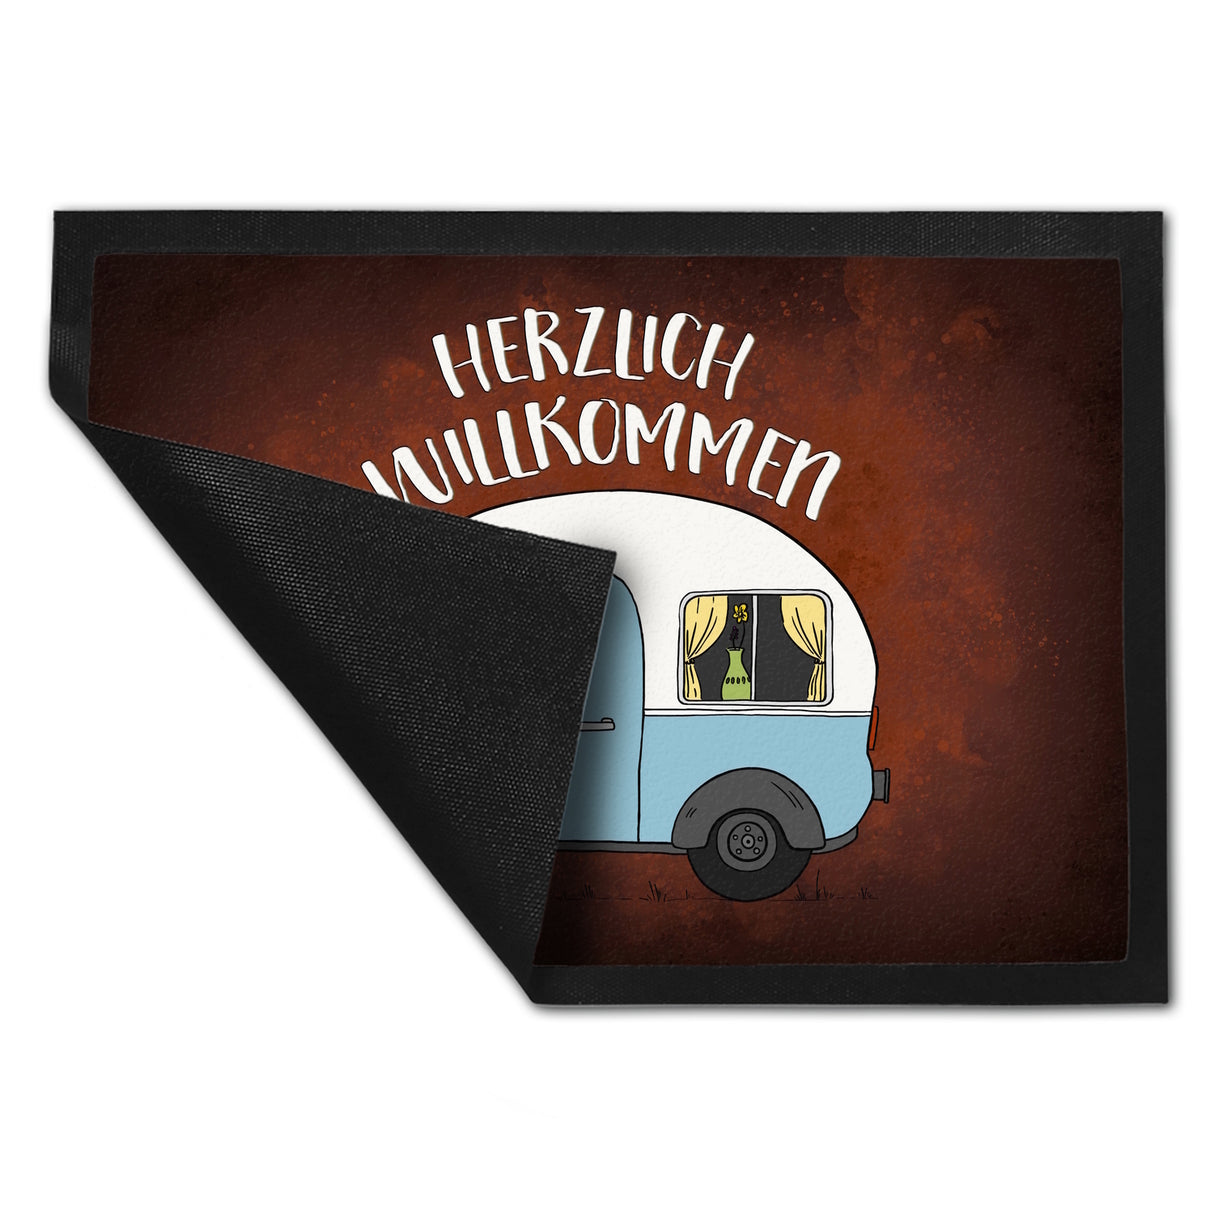 Herzlich willkommen Fußmatte mit Wohnwagen Motiv Wohnmobil Camping Gast Besuch Gäste